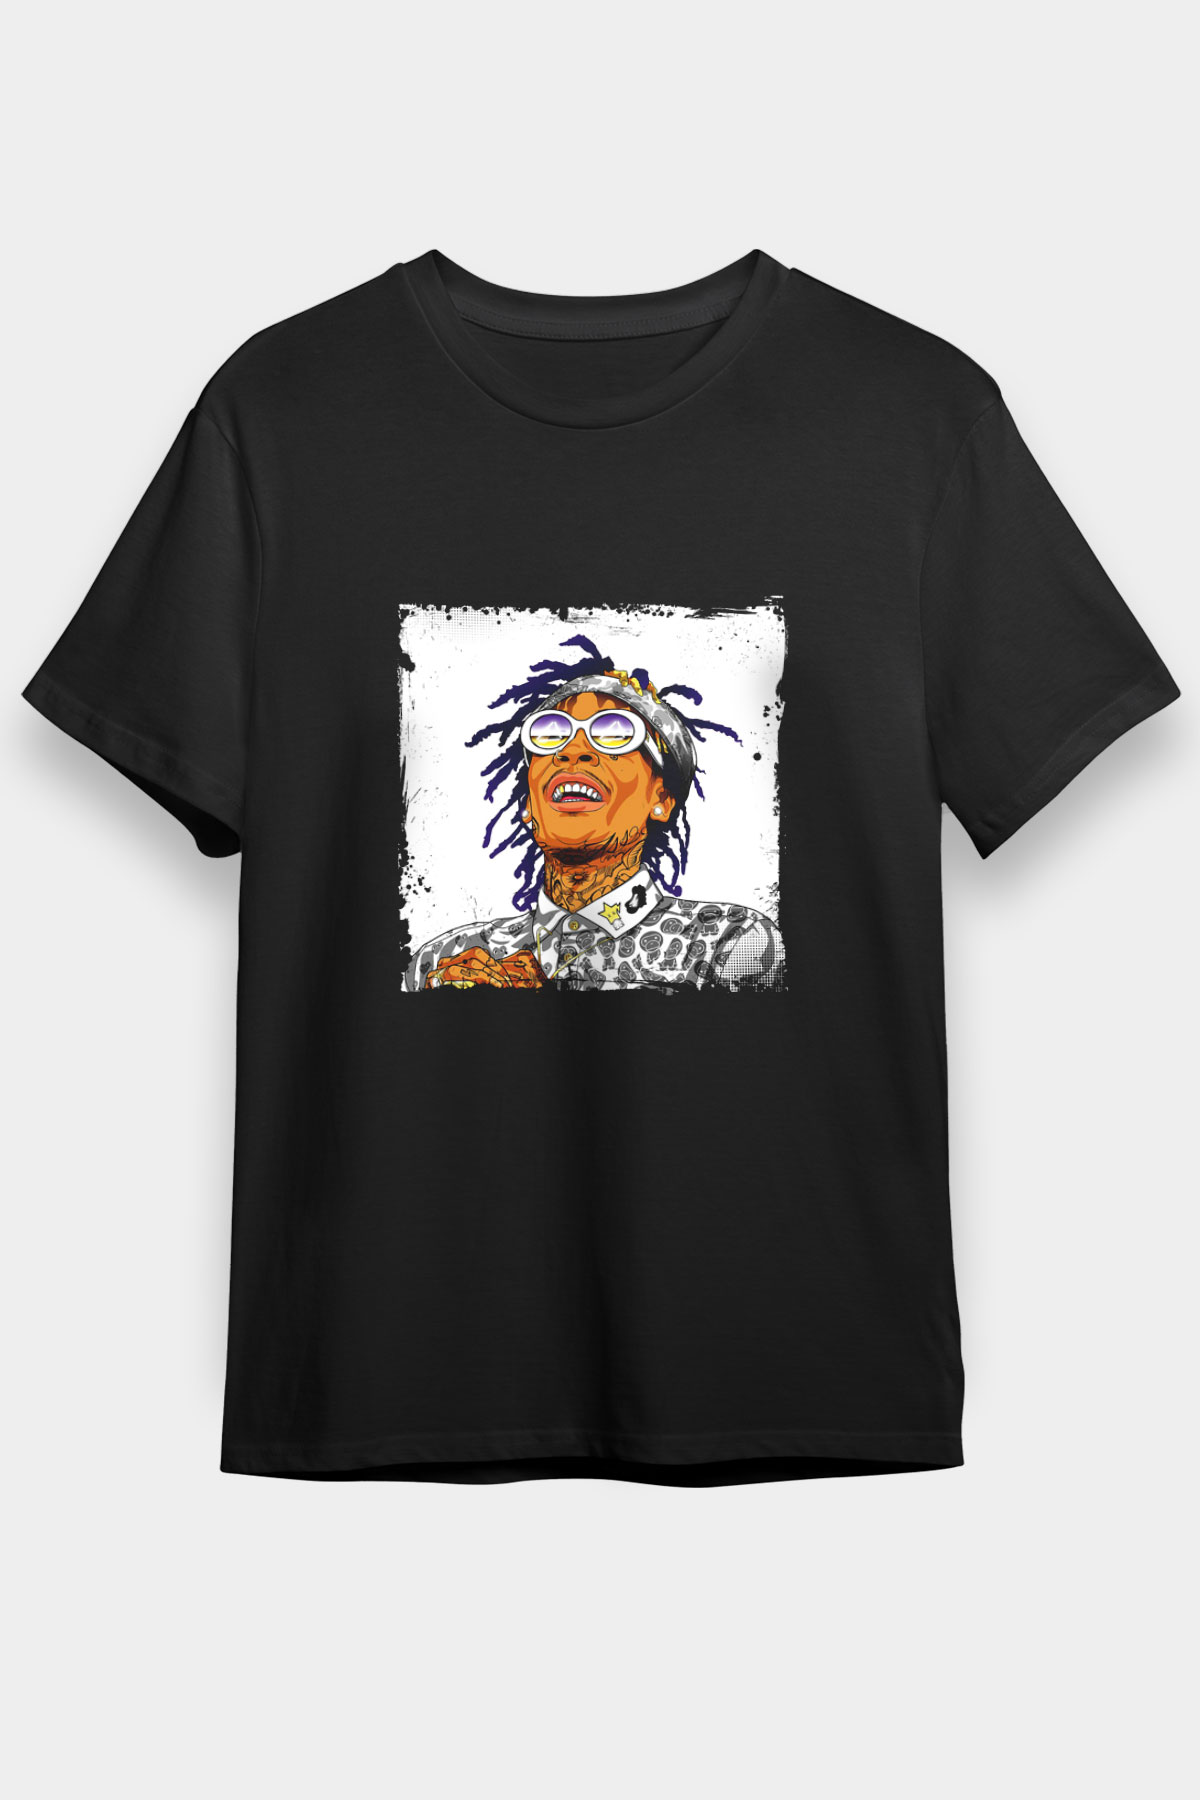 Wiz Khalifa T shirt,Hip Hop,Rap Tshirt 09